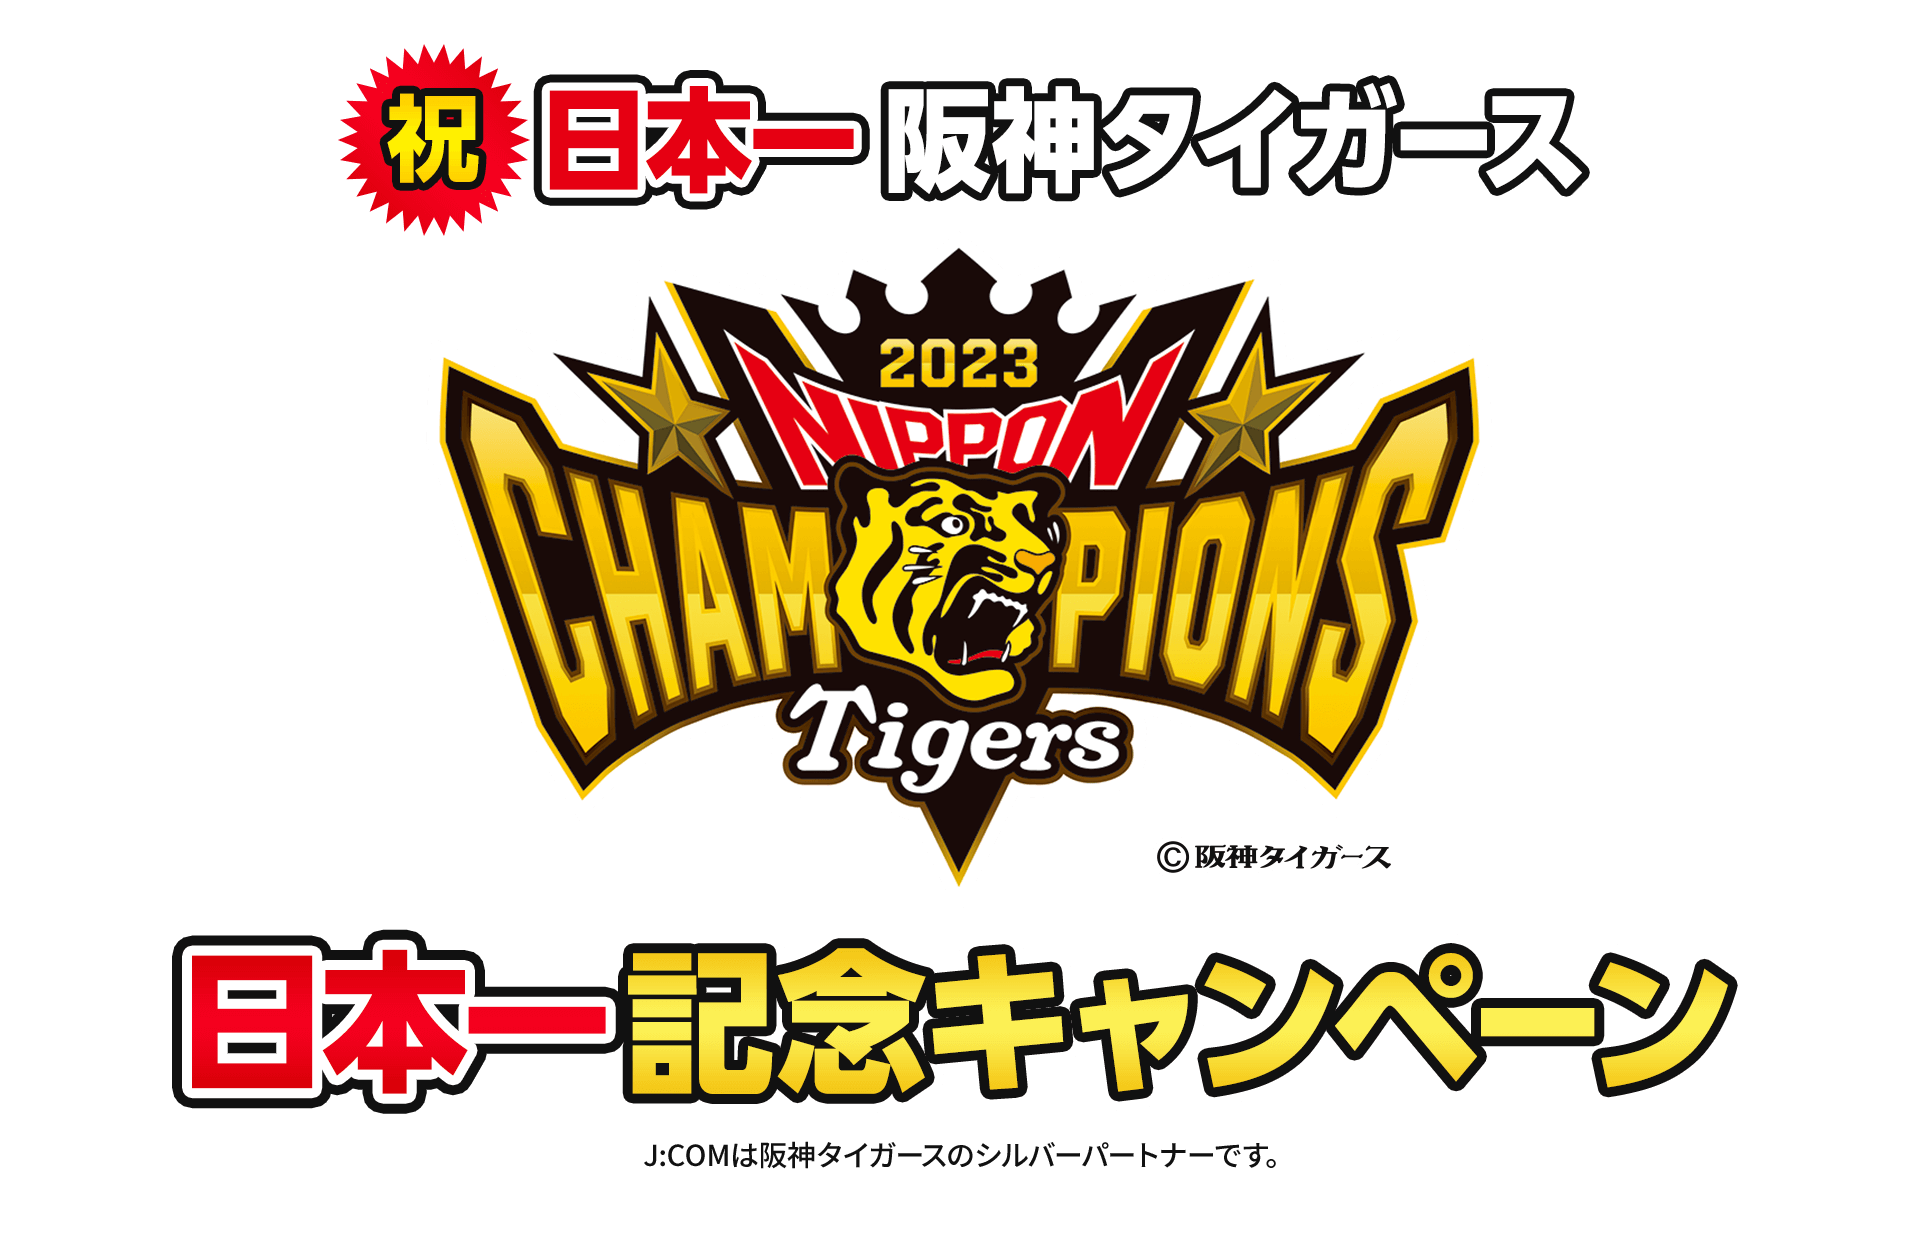 祝 日本一 阪神タイガース 2023 日本一記念キャンペーン